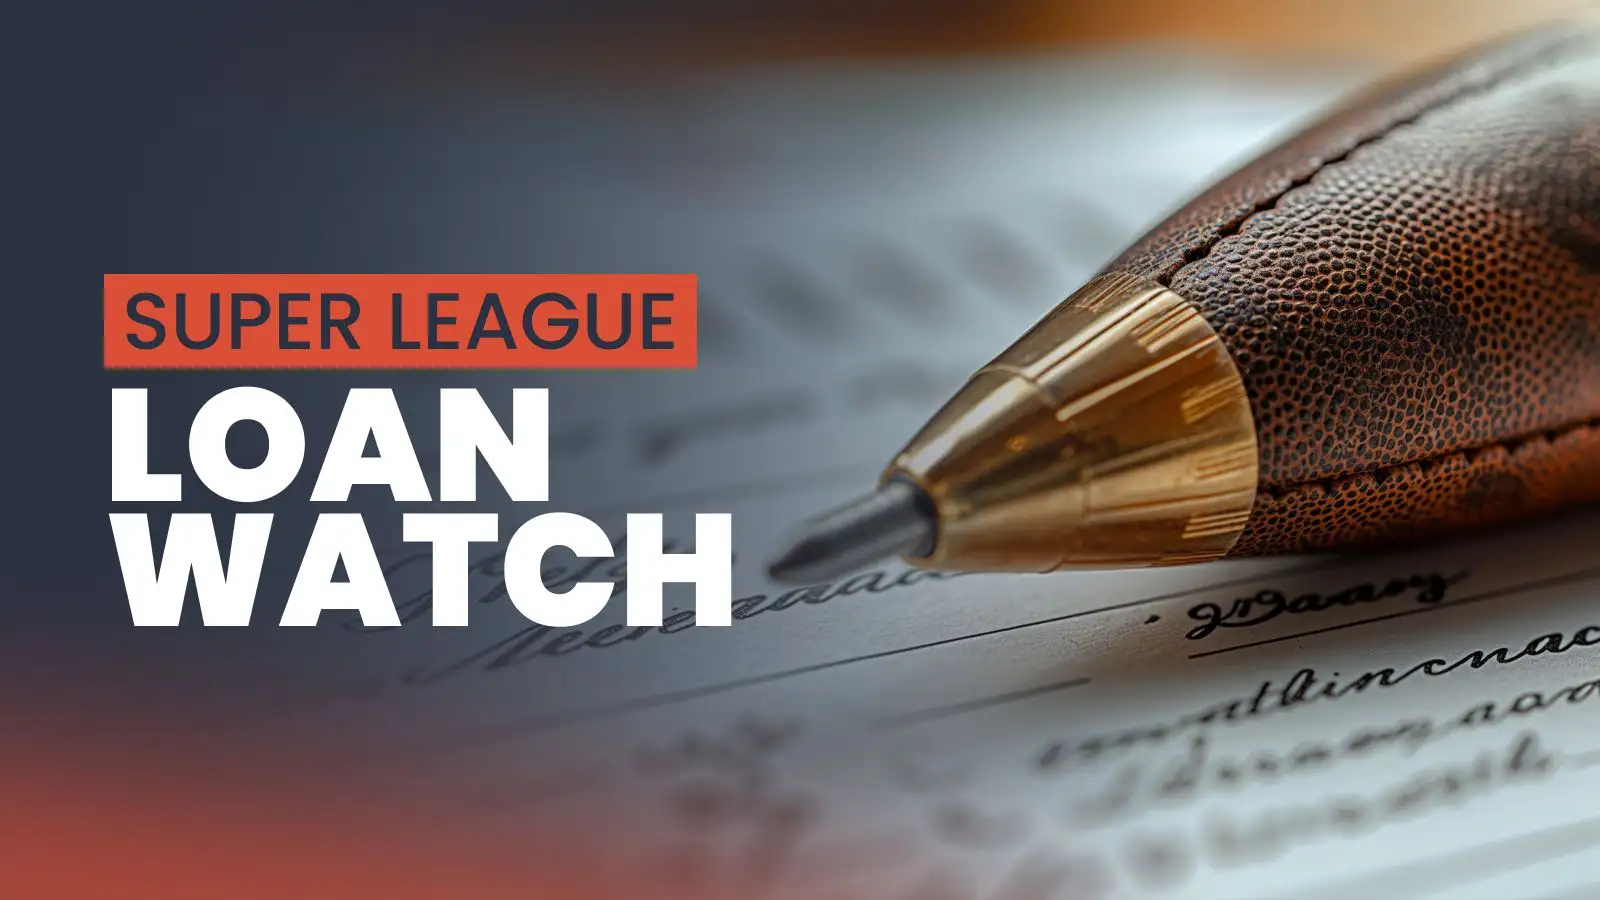 Super League loan watch